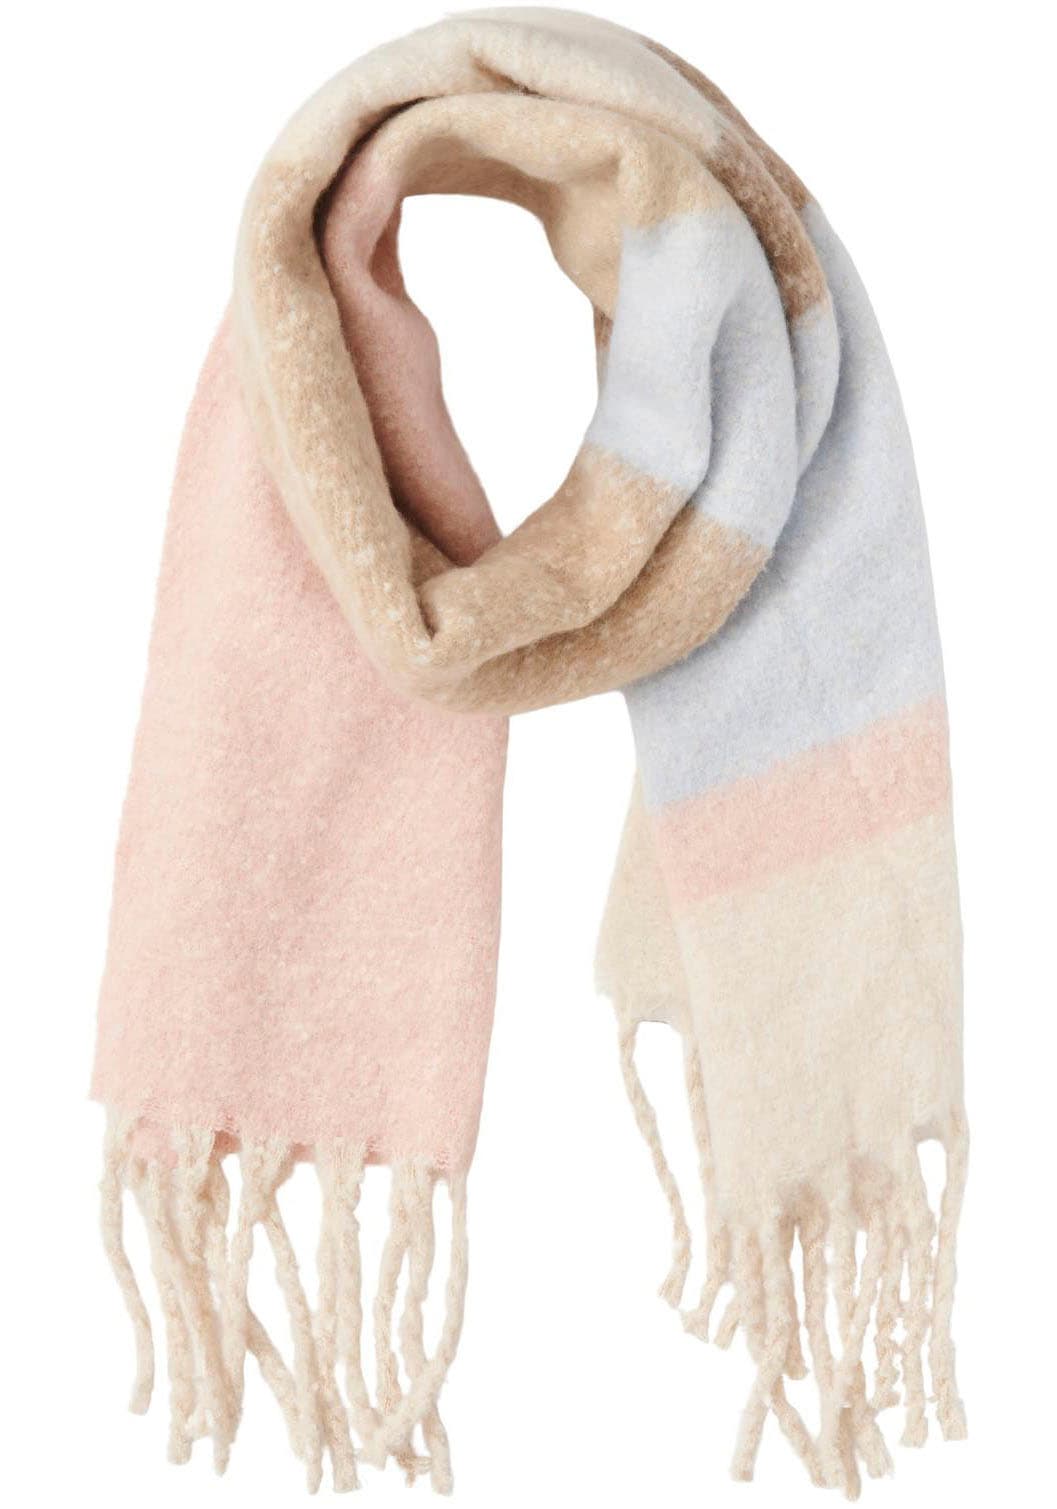 Schals online kaufen | jede für auf Tücher Jahreszeit